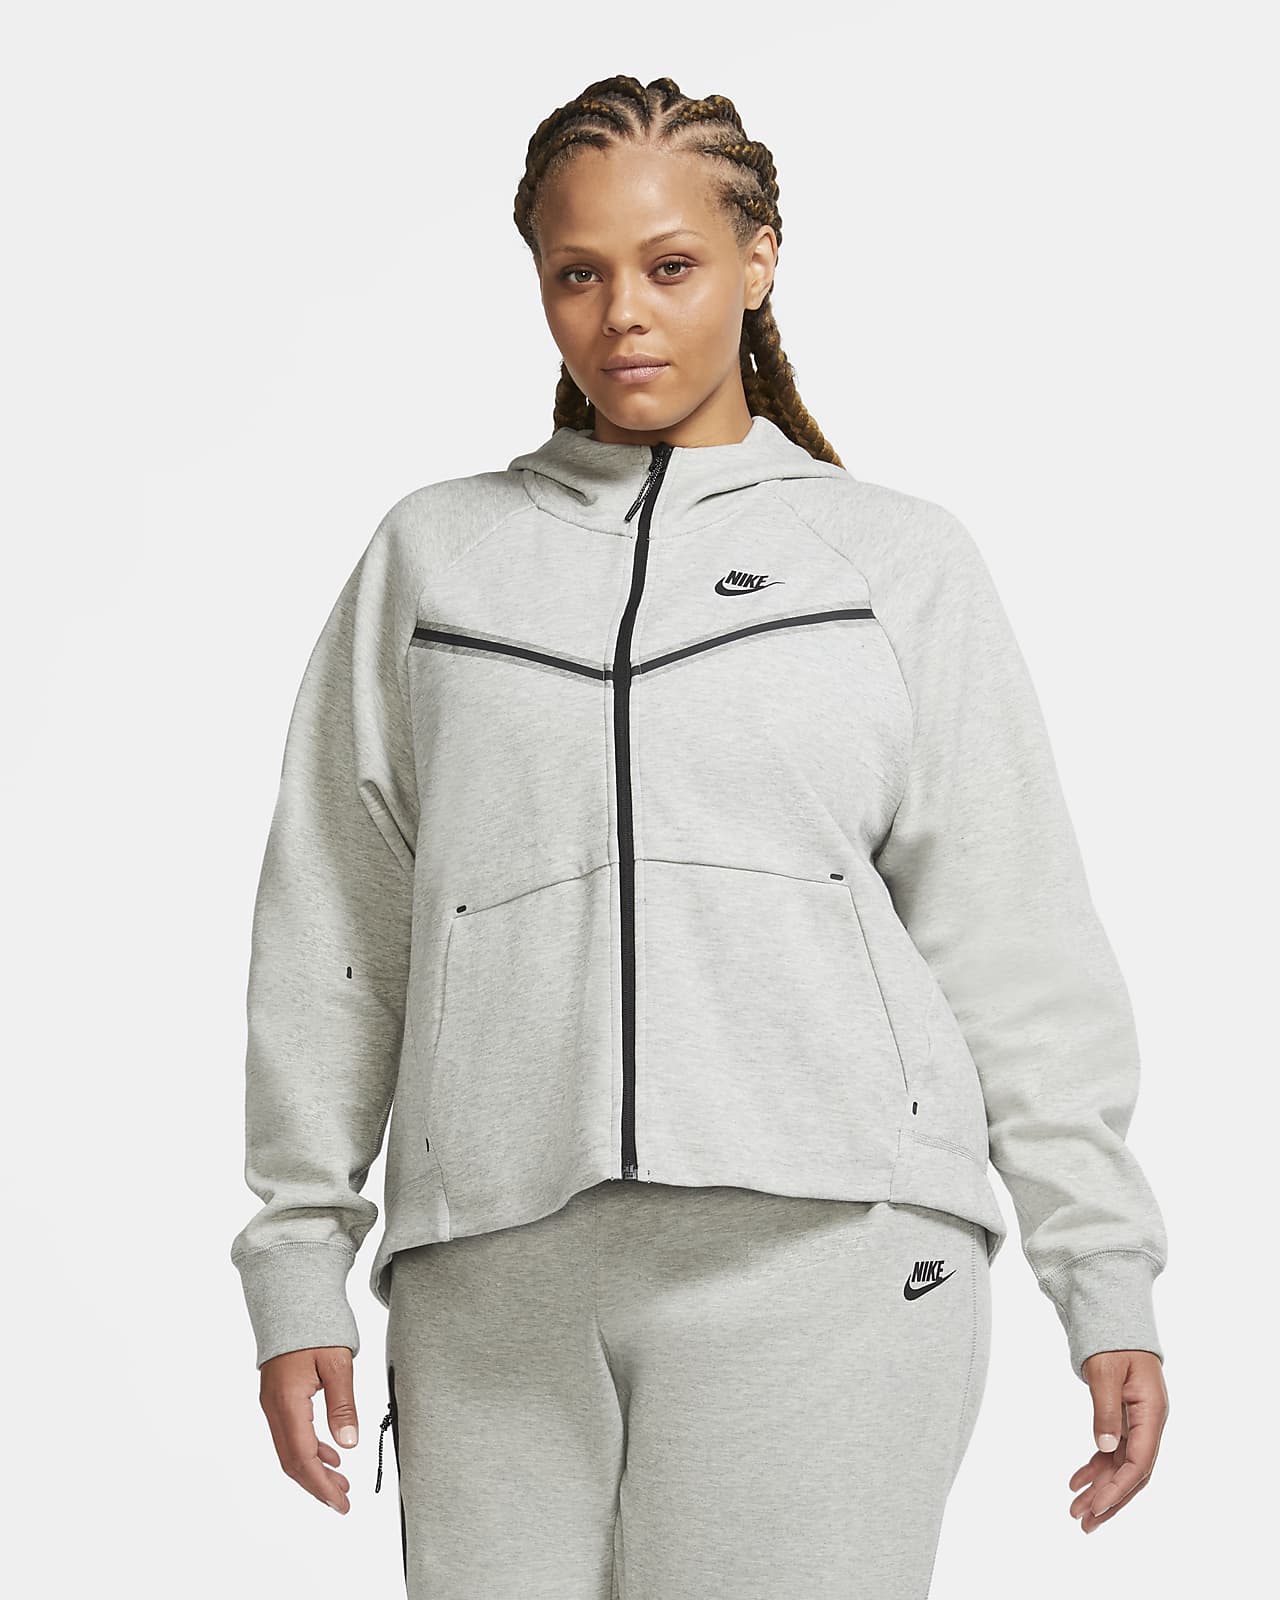 Naar boven Leerling eigendom Nike Sportswear Tech Fleece Windrunner Women's Full-Zip Hoodie (Plus Size).  Nike.com